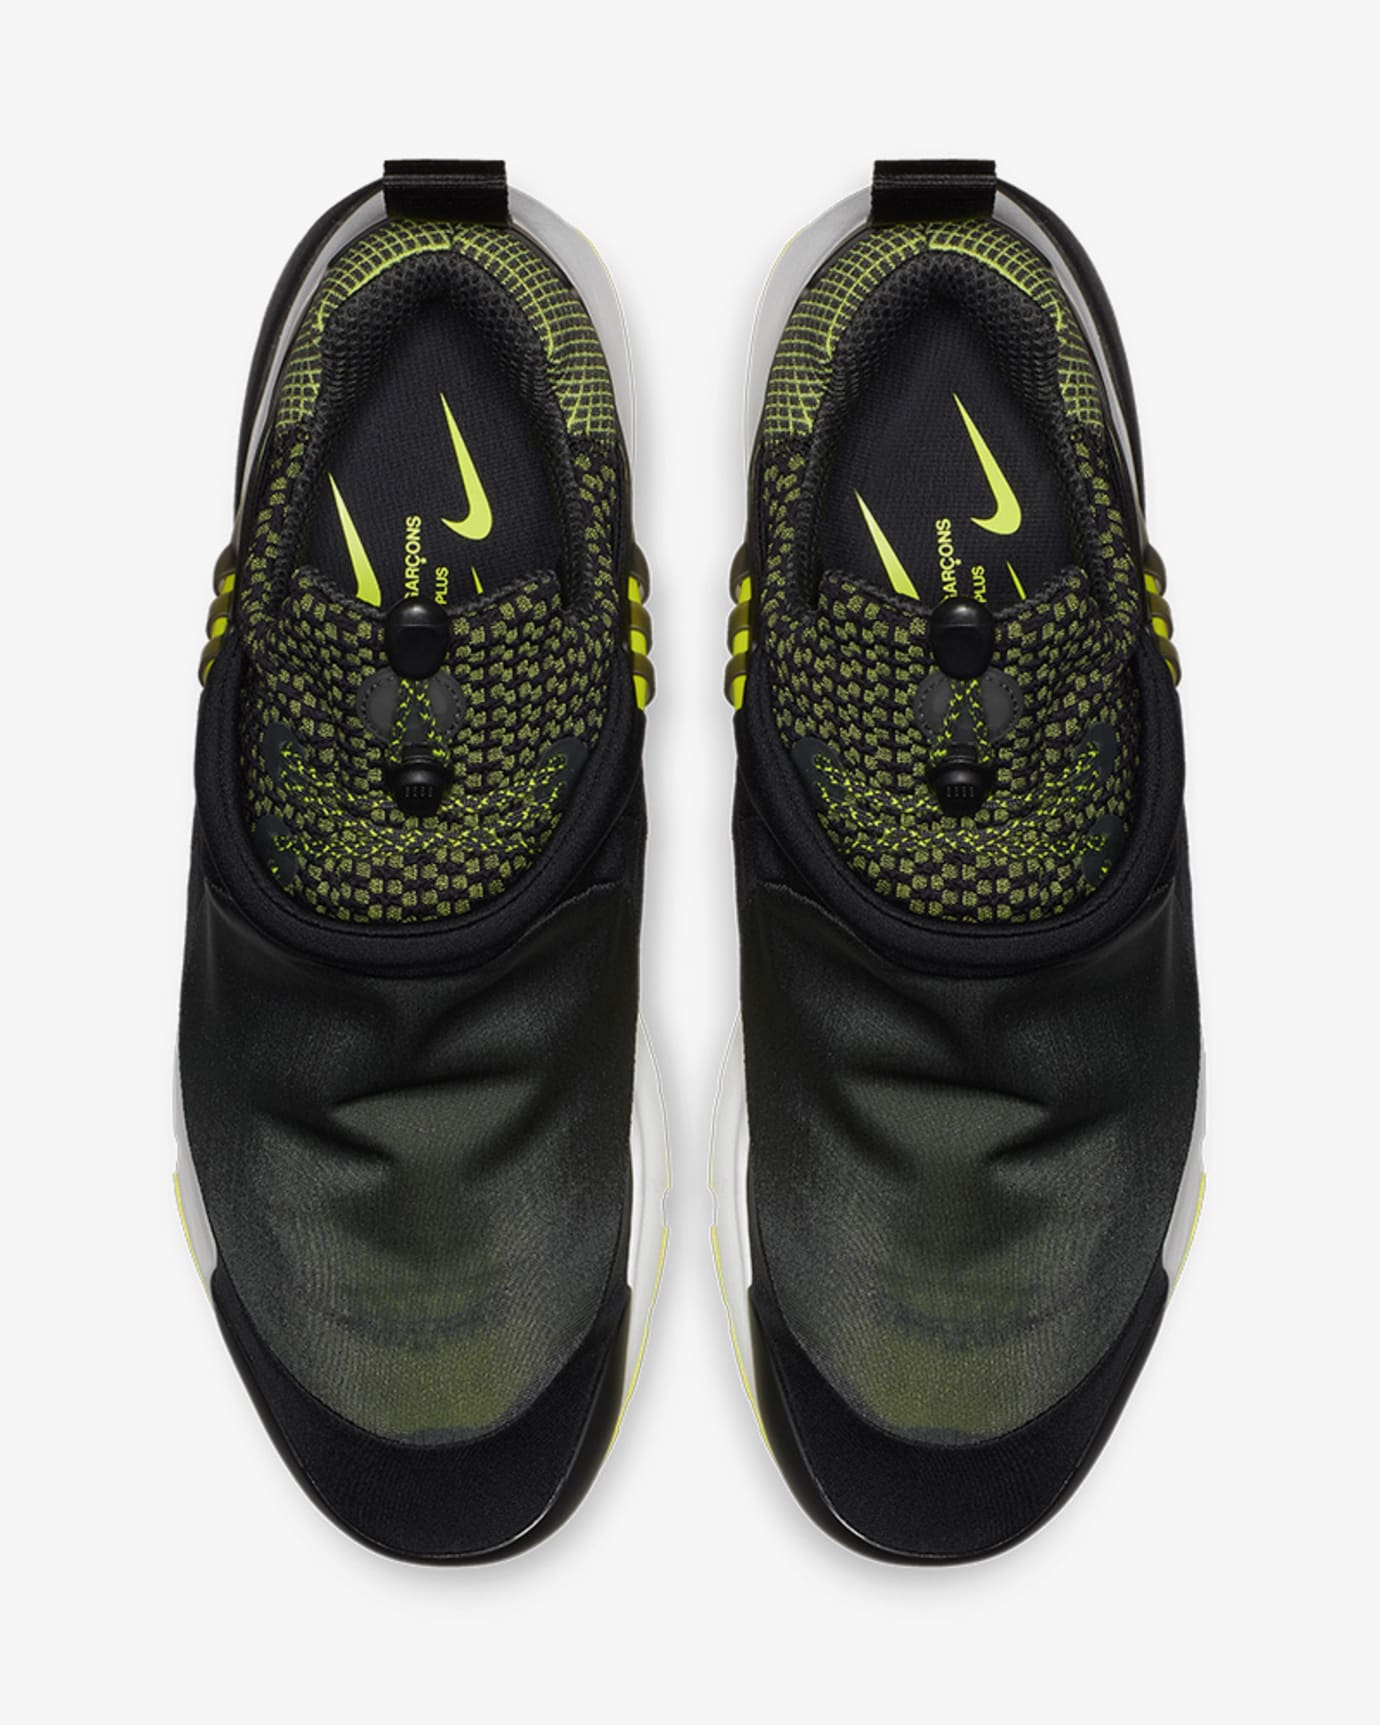 Comme des Garçons x Nike Air Presto Foot Tent Release Date | Sole 